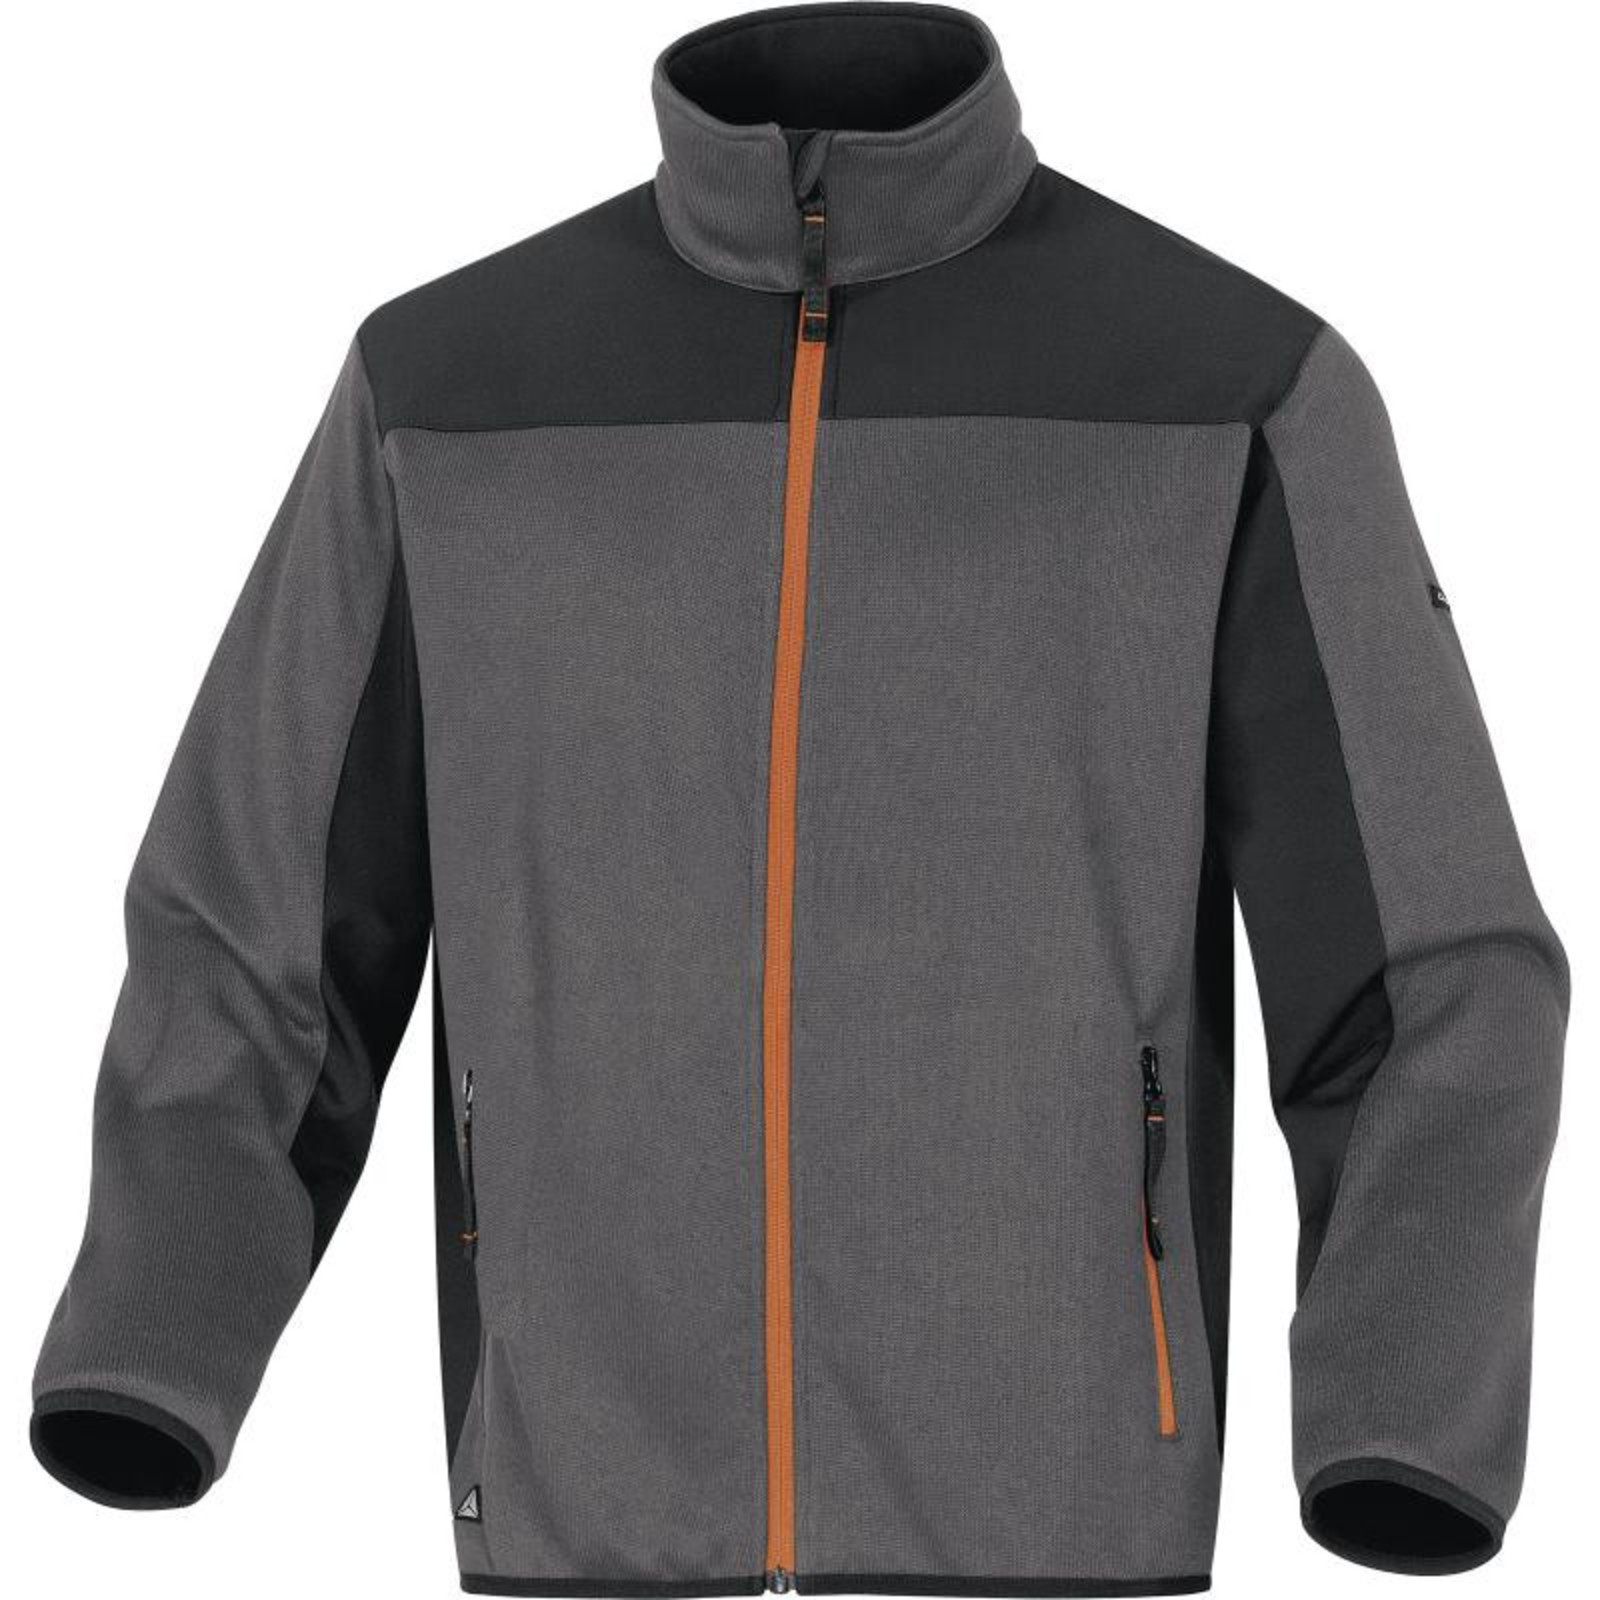 Softshellovo-pleteninová bunda Delta Plus Beaver - veľkosť: M, farba: sivá/oranžová